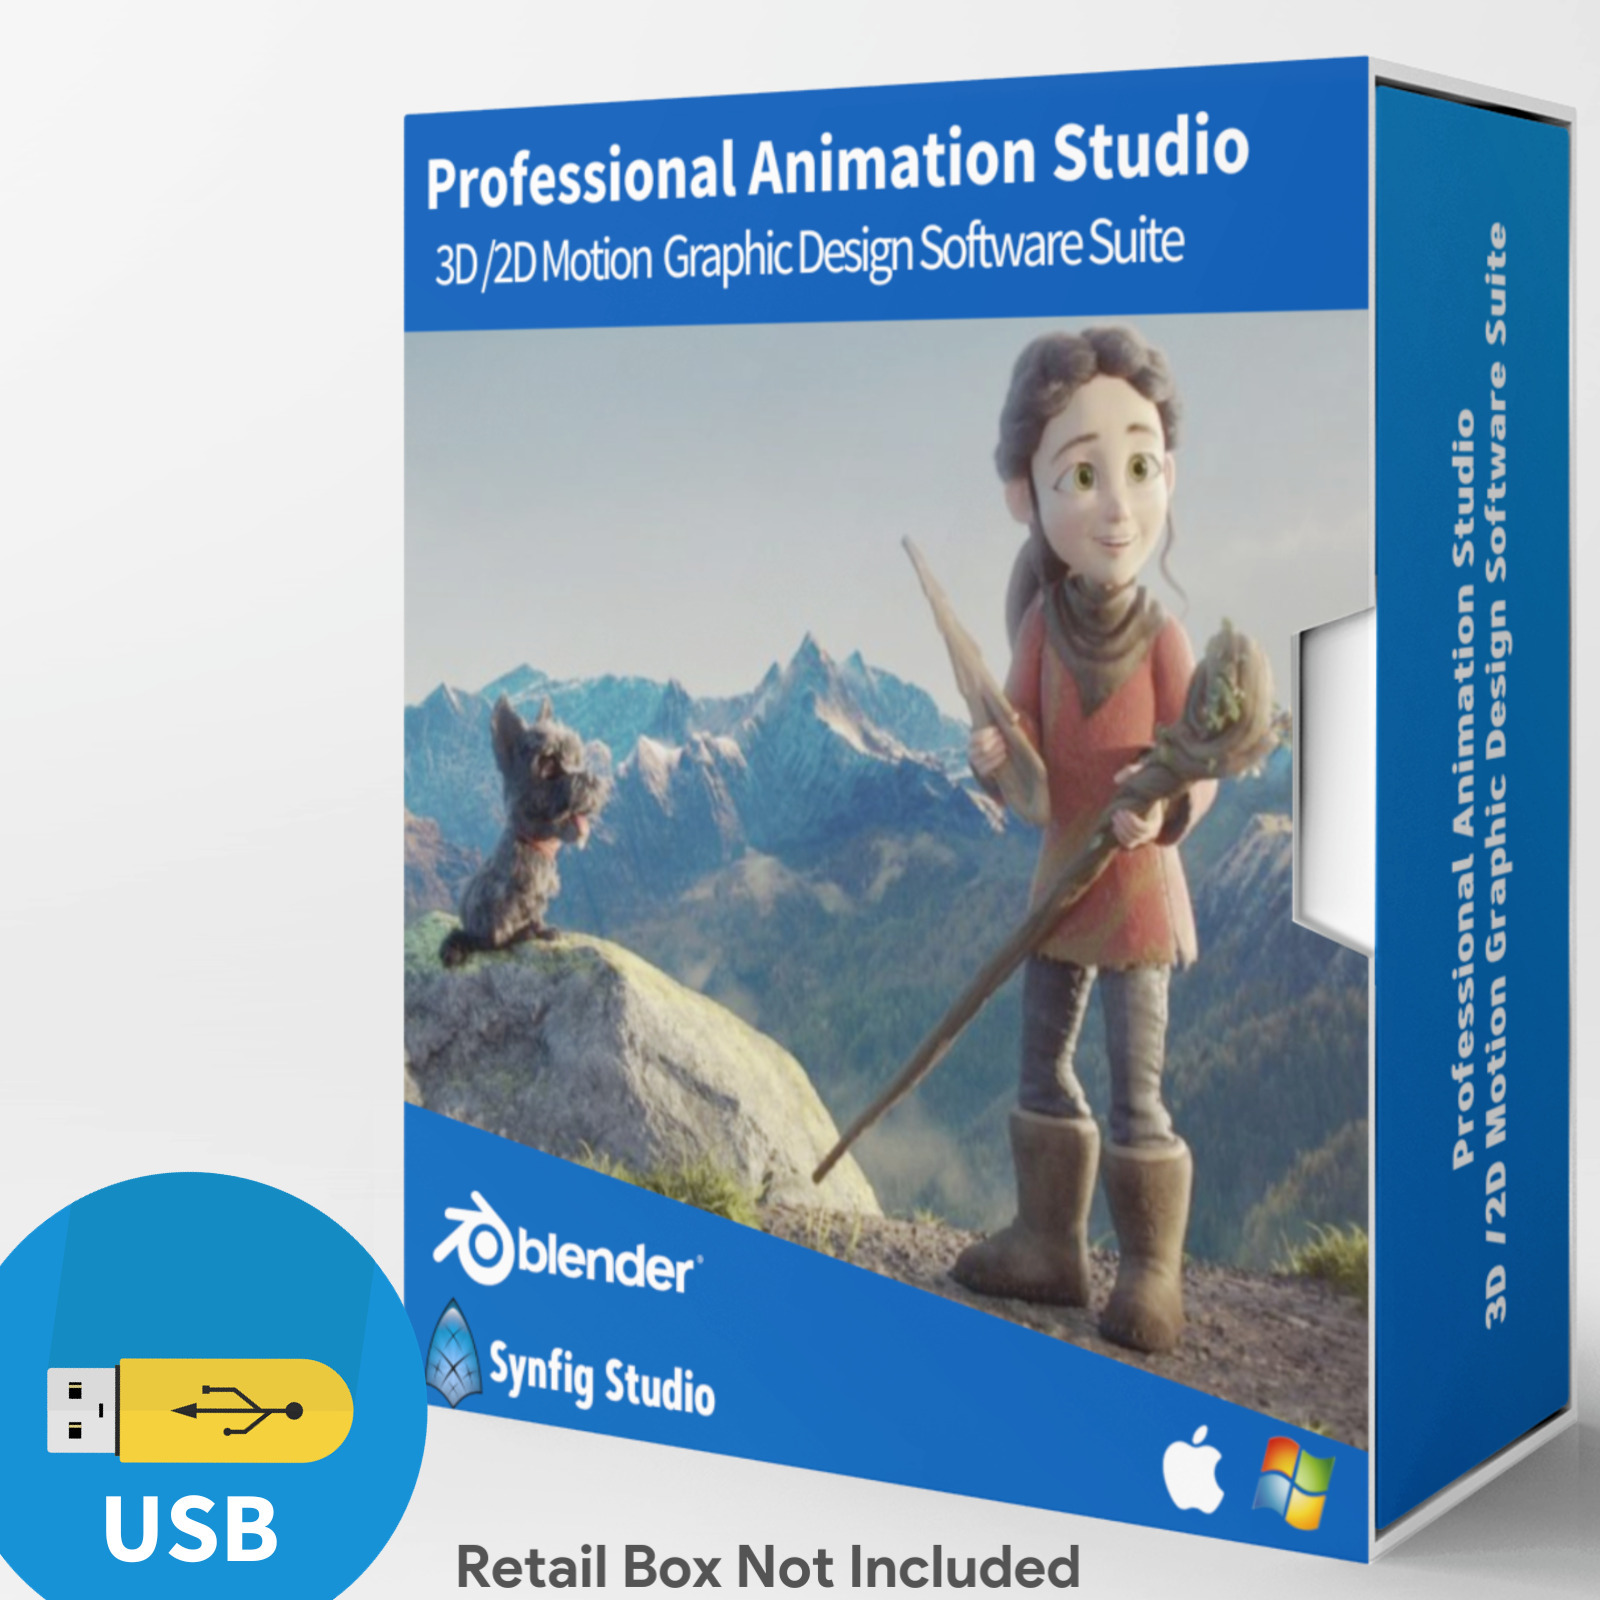 Animation Studio- PRO 3D/2D Motion Graphic Design Software Suite-USB Windows/Mac